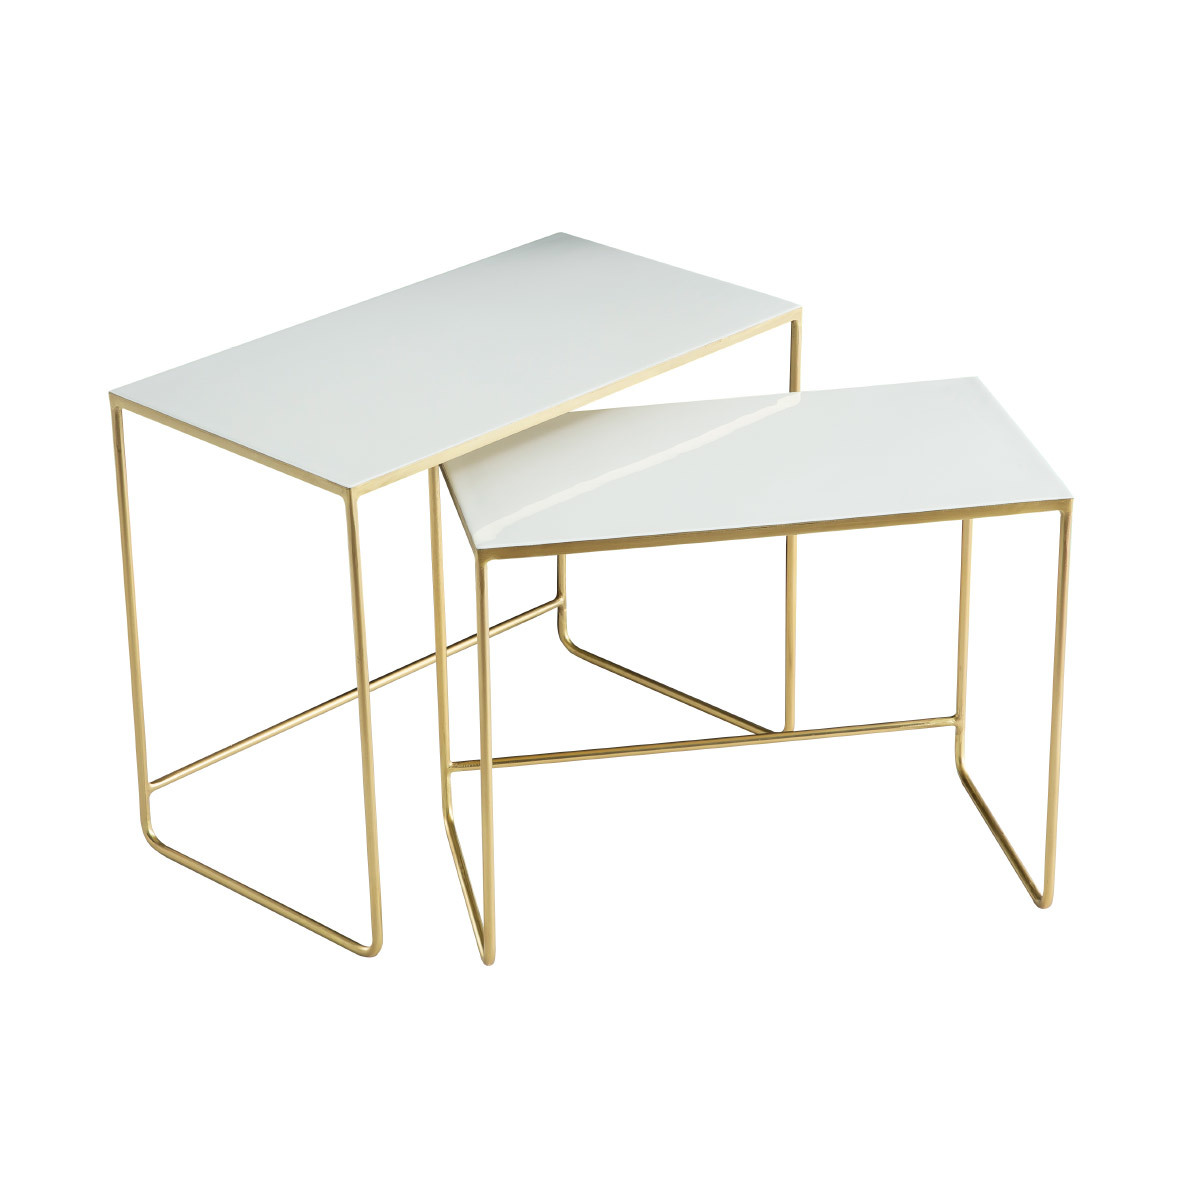 Tables basses gigognes rectangulaires design blanc et métal doré (lot de 2) WESS vue1